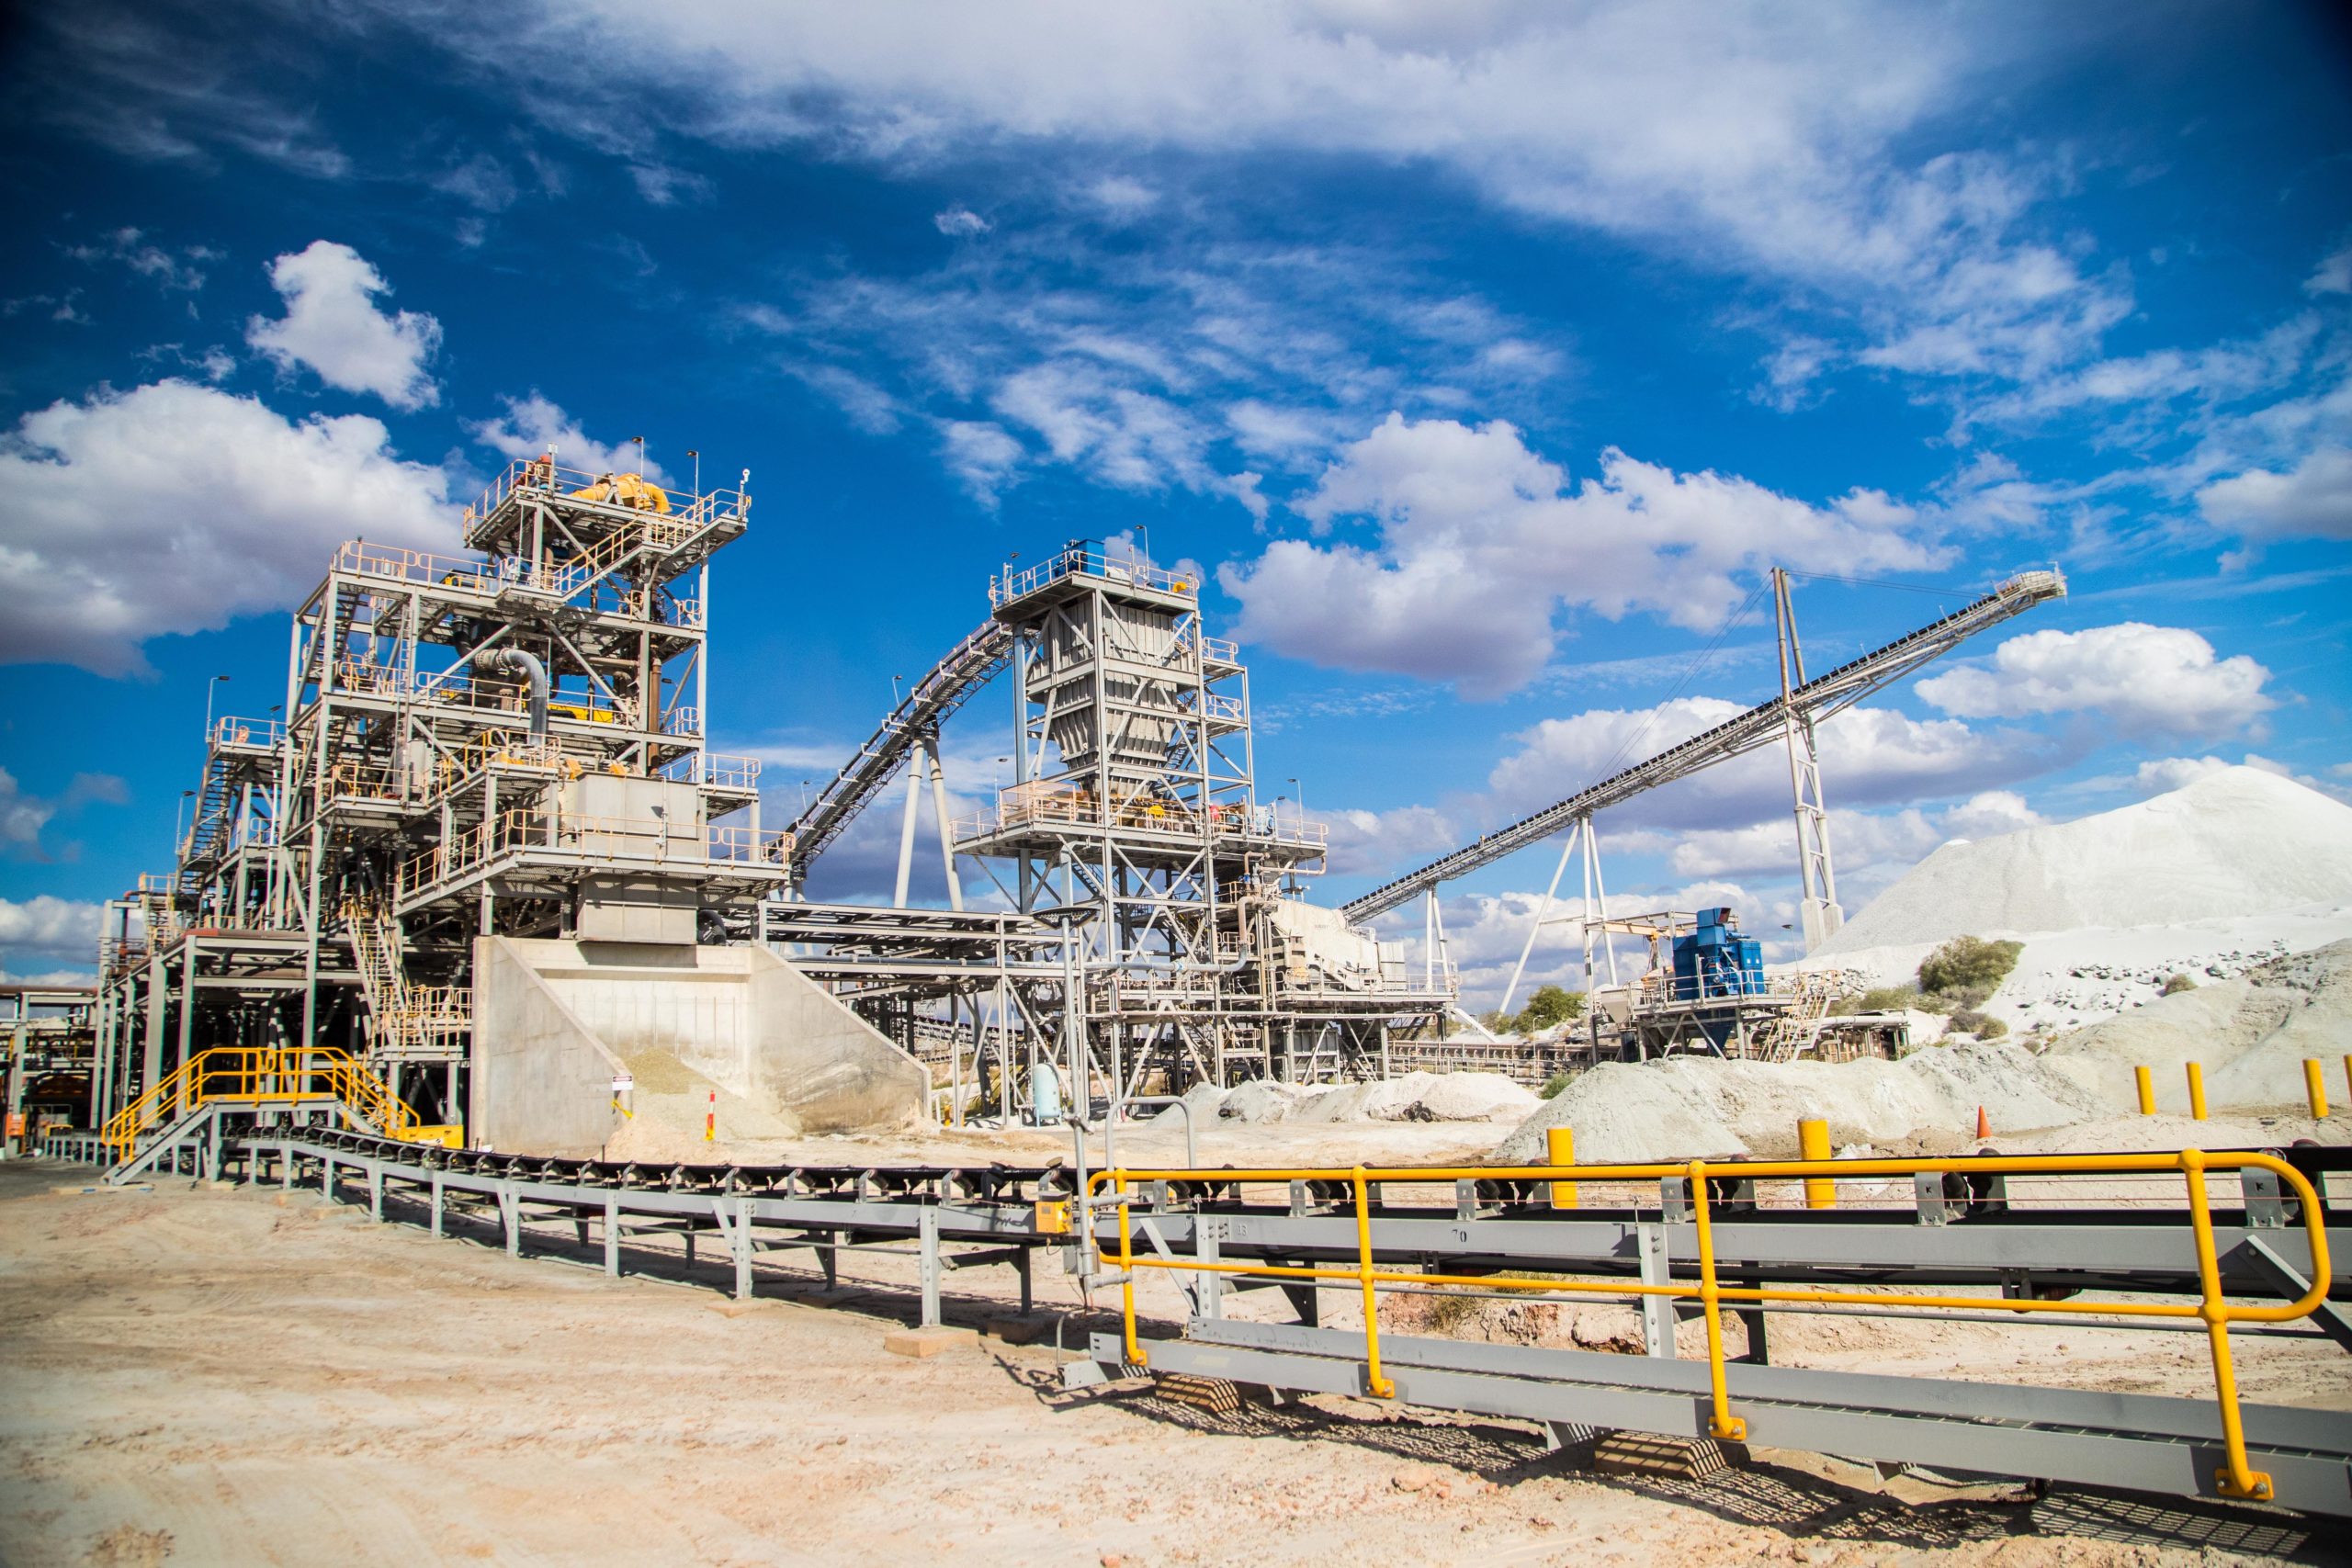 Технология TOMRA Mining используется на крупнейшем в мире заводе по сортировке лития